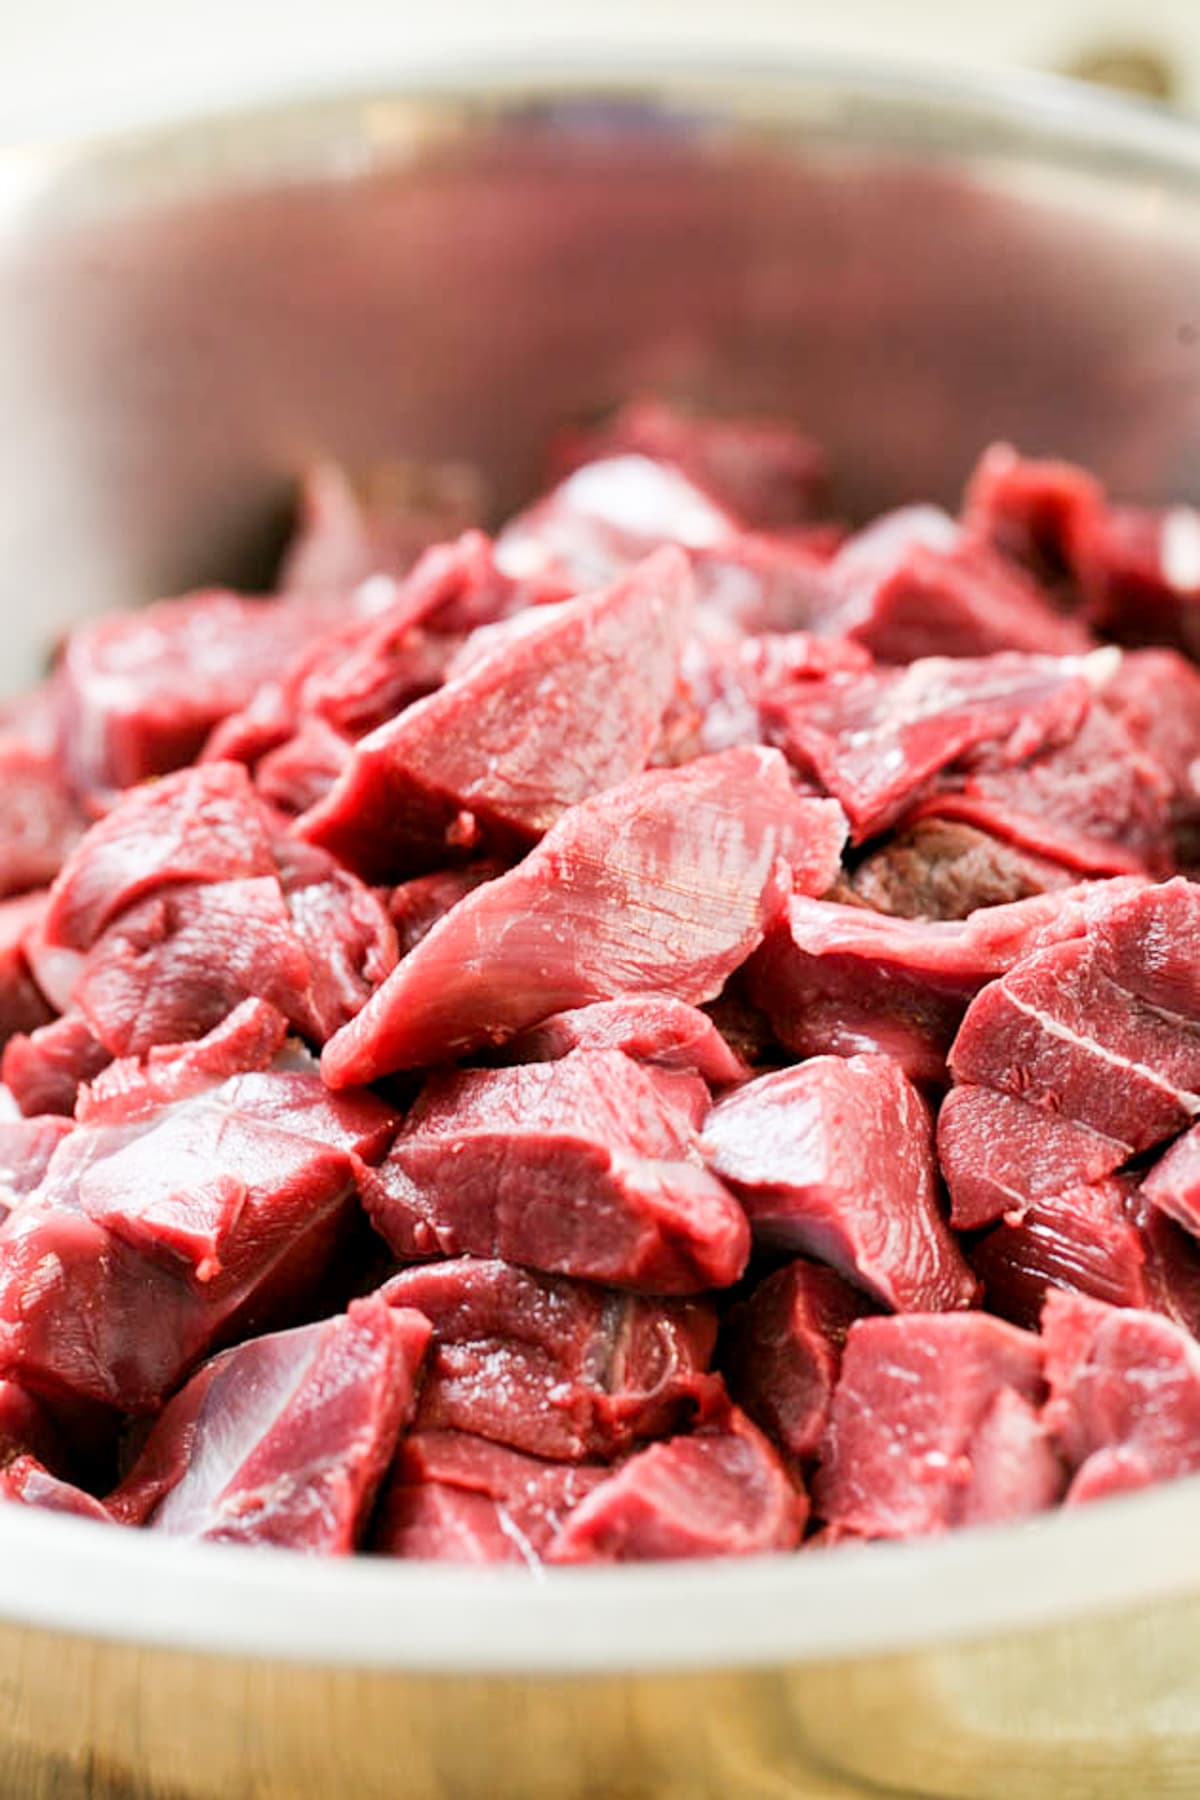 cubbed venison meat